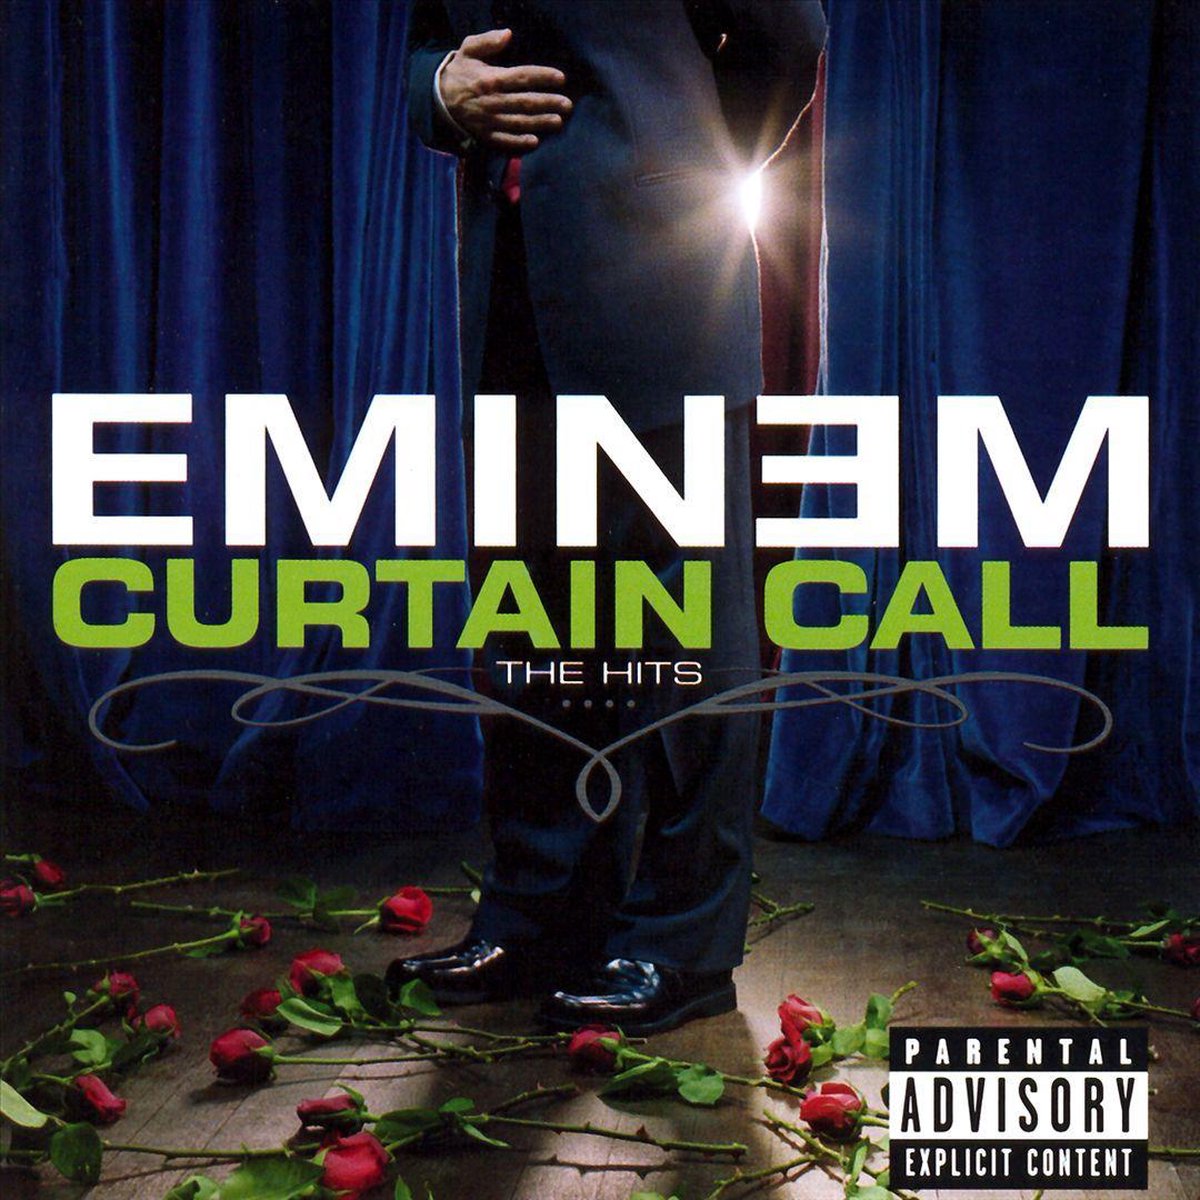 Eminem - Curtain Call (CD) - Eminem